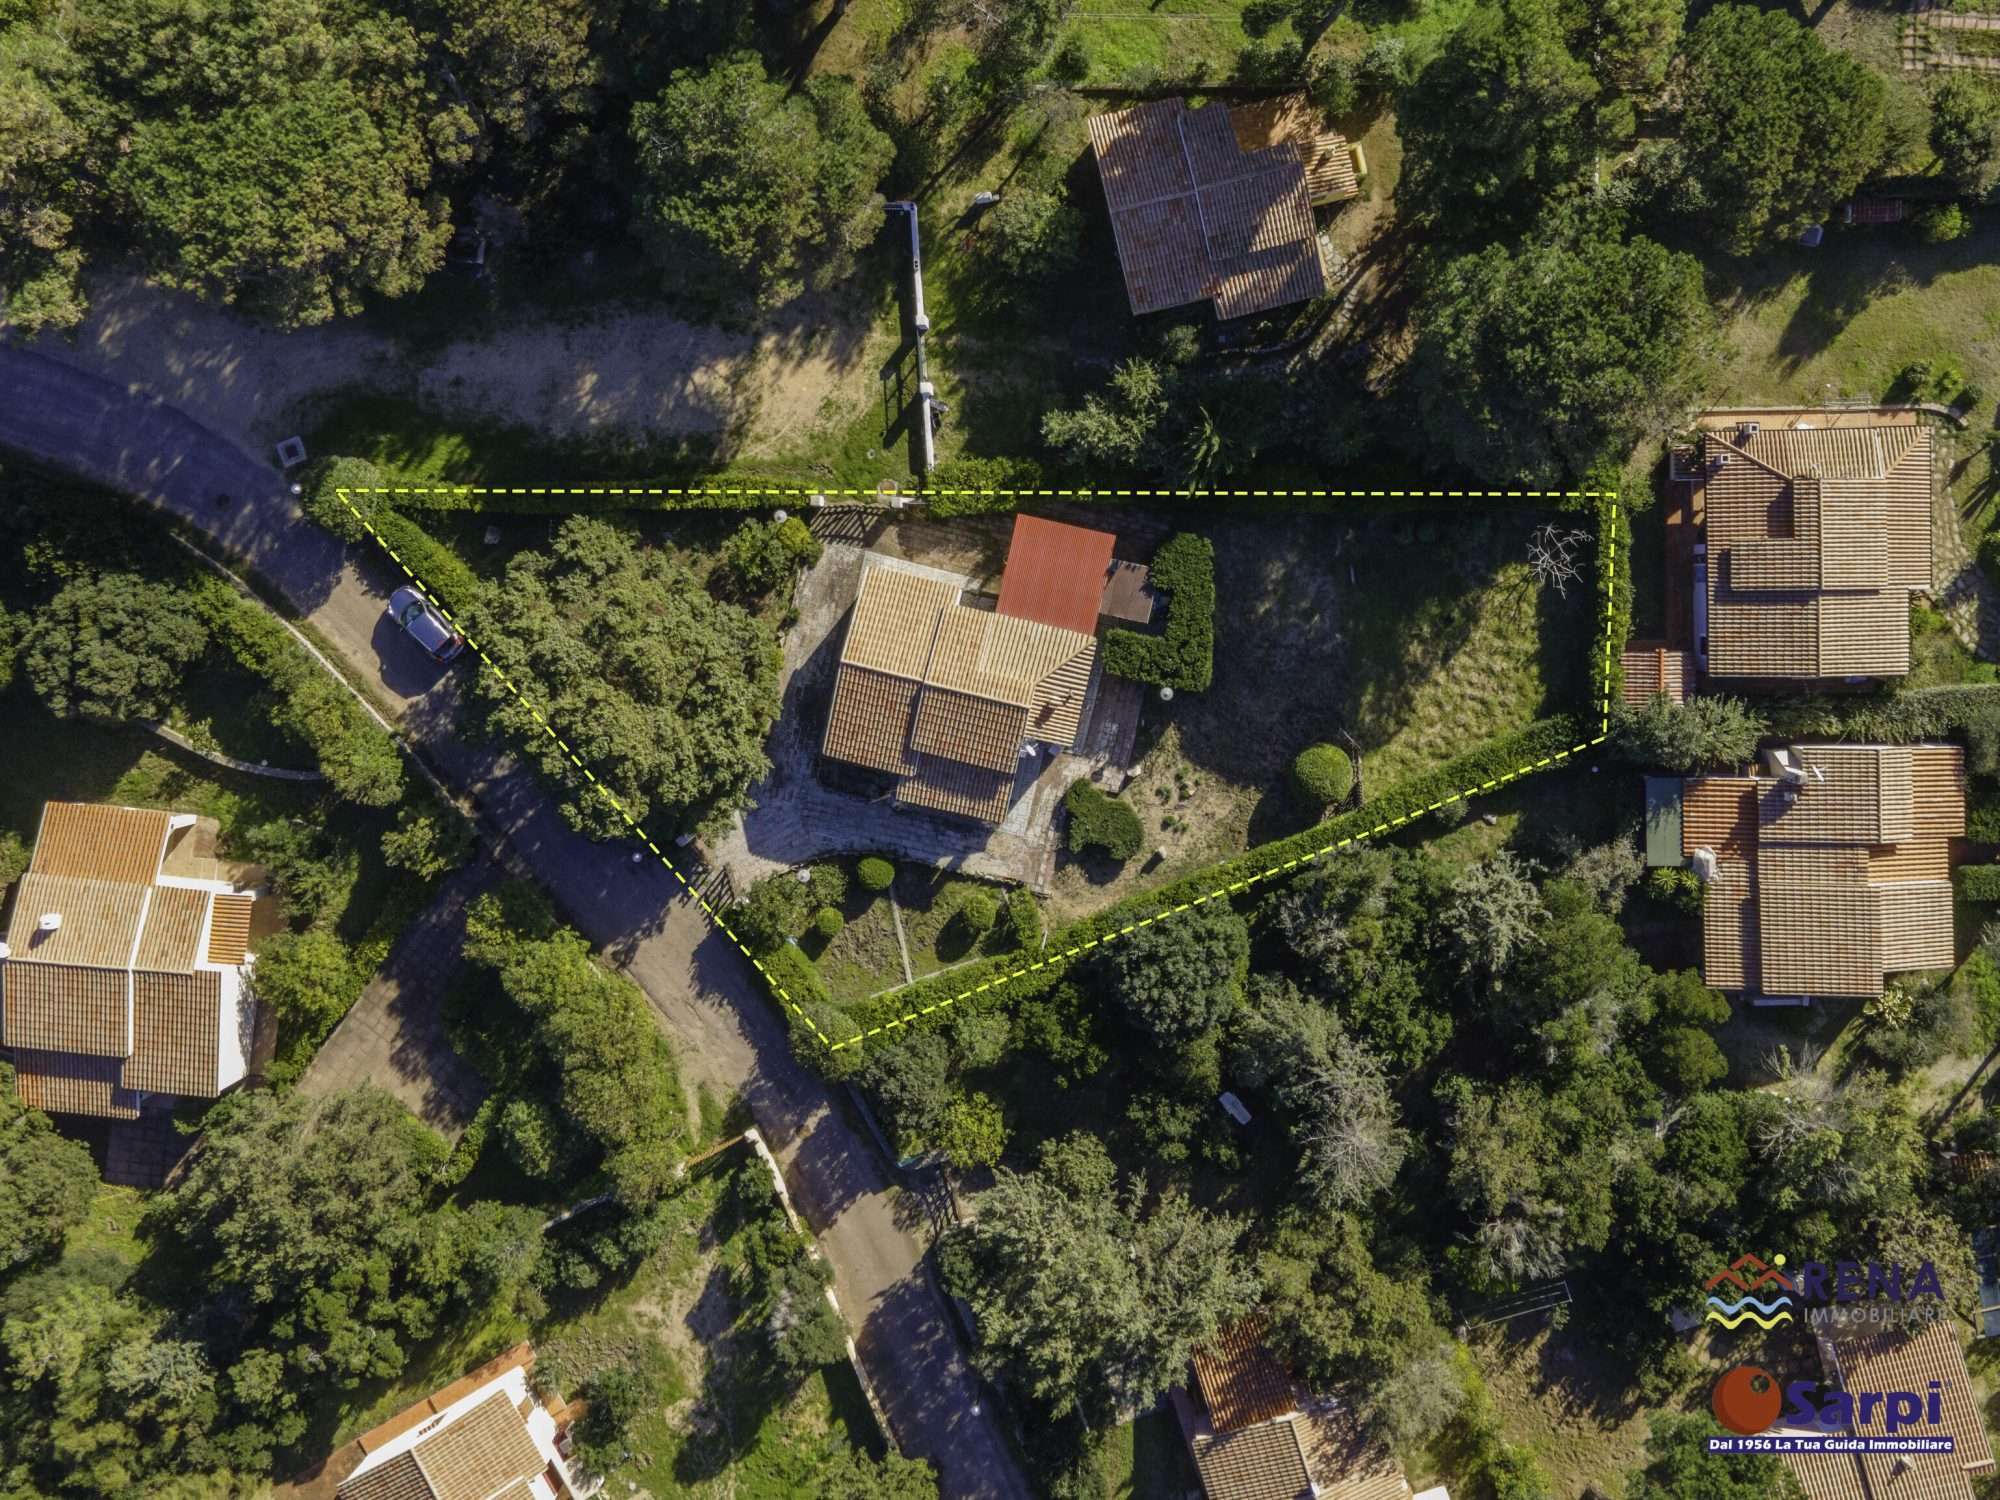 Villetta indipendente con giardino privato – Rena Majore